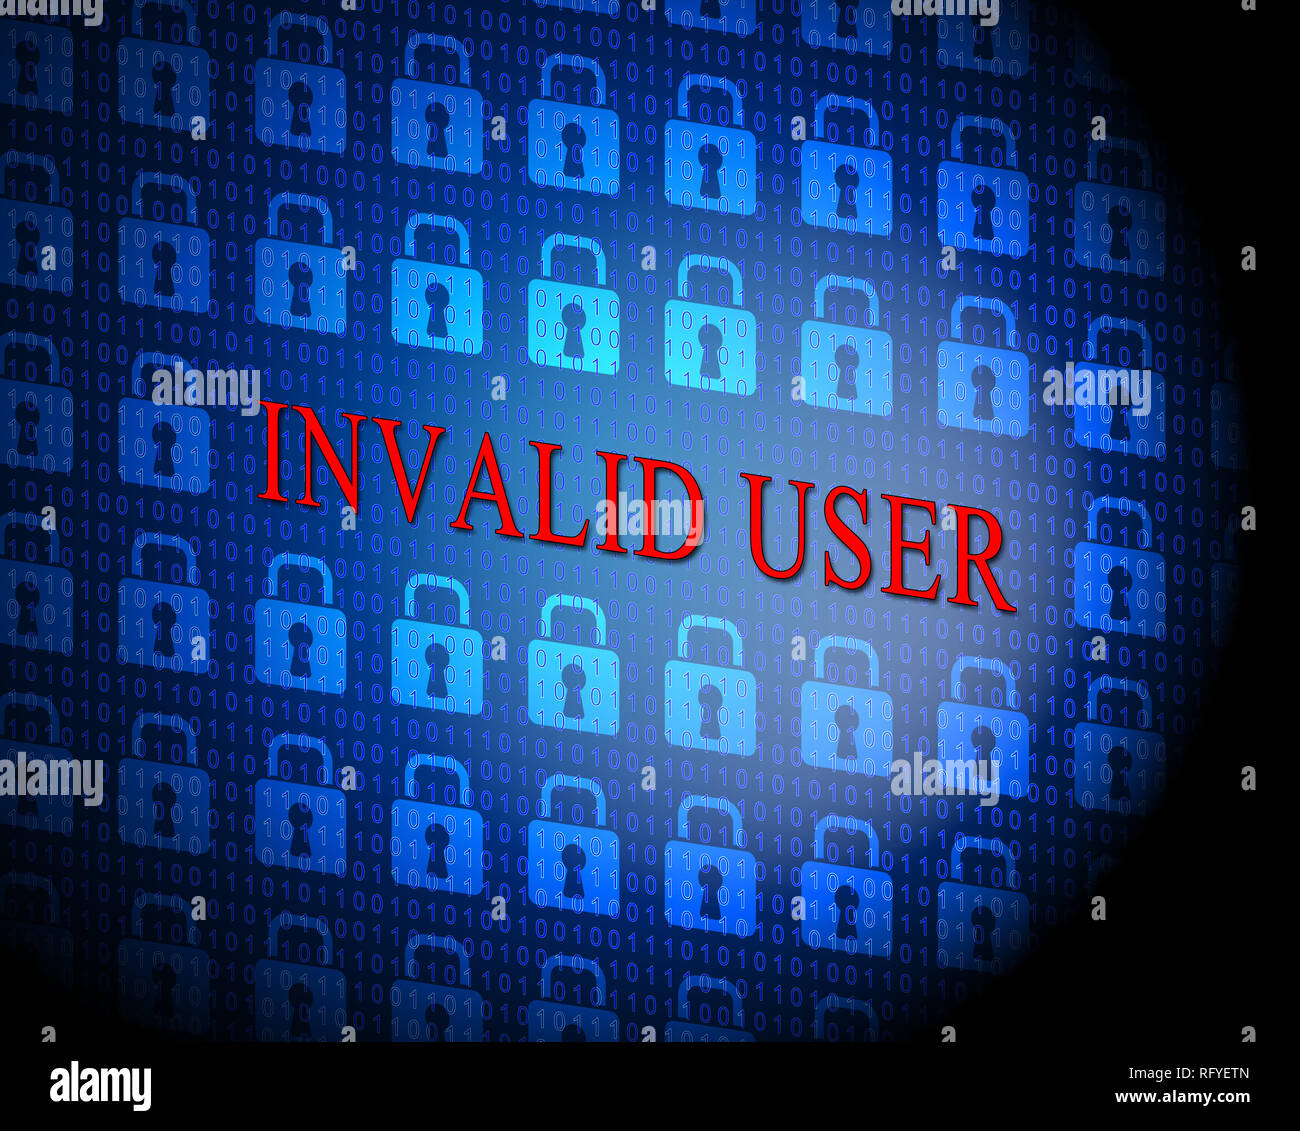 Benutzername vergessen Meldung bedeutet Falsche Benutzer-ID eingegeben. Online-ID-Fehler - 3D-Darstellung Stockfoto